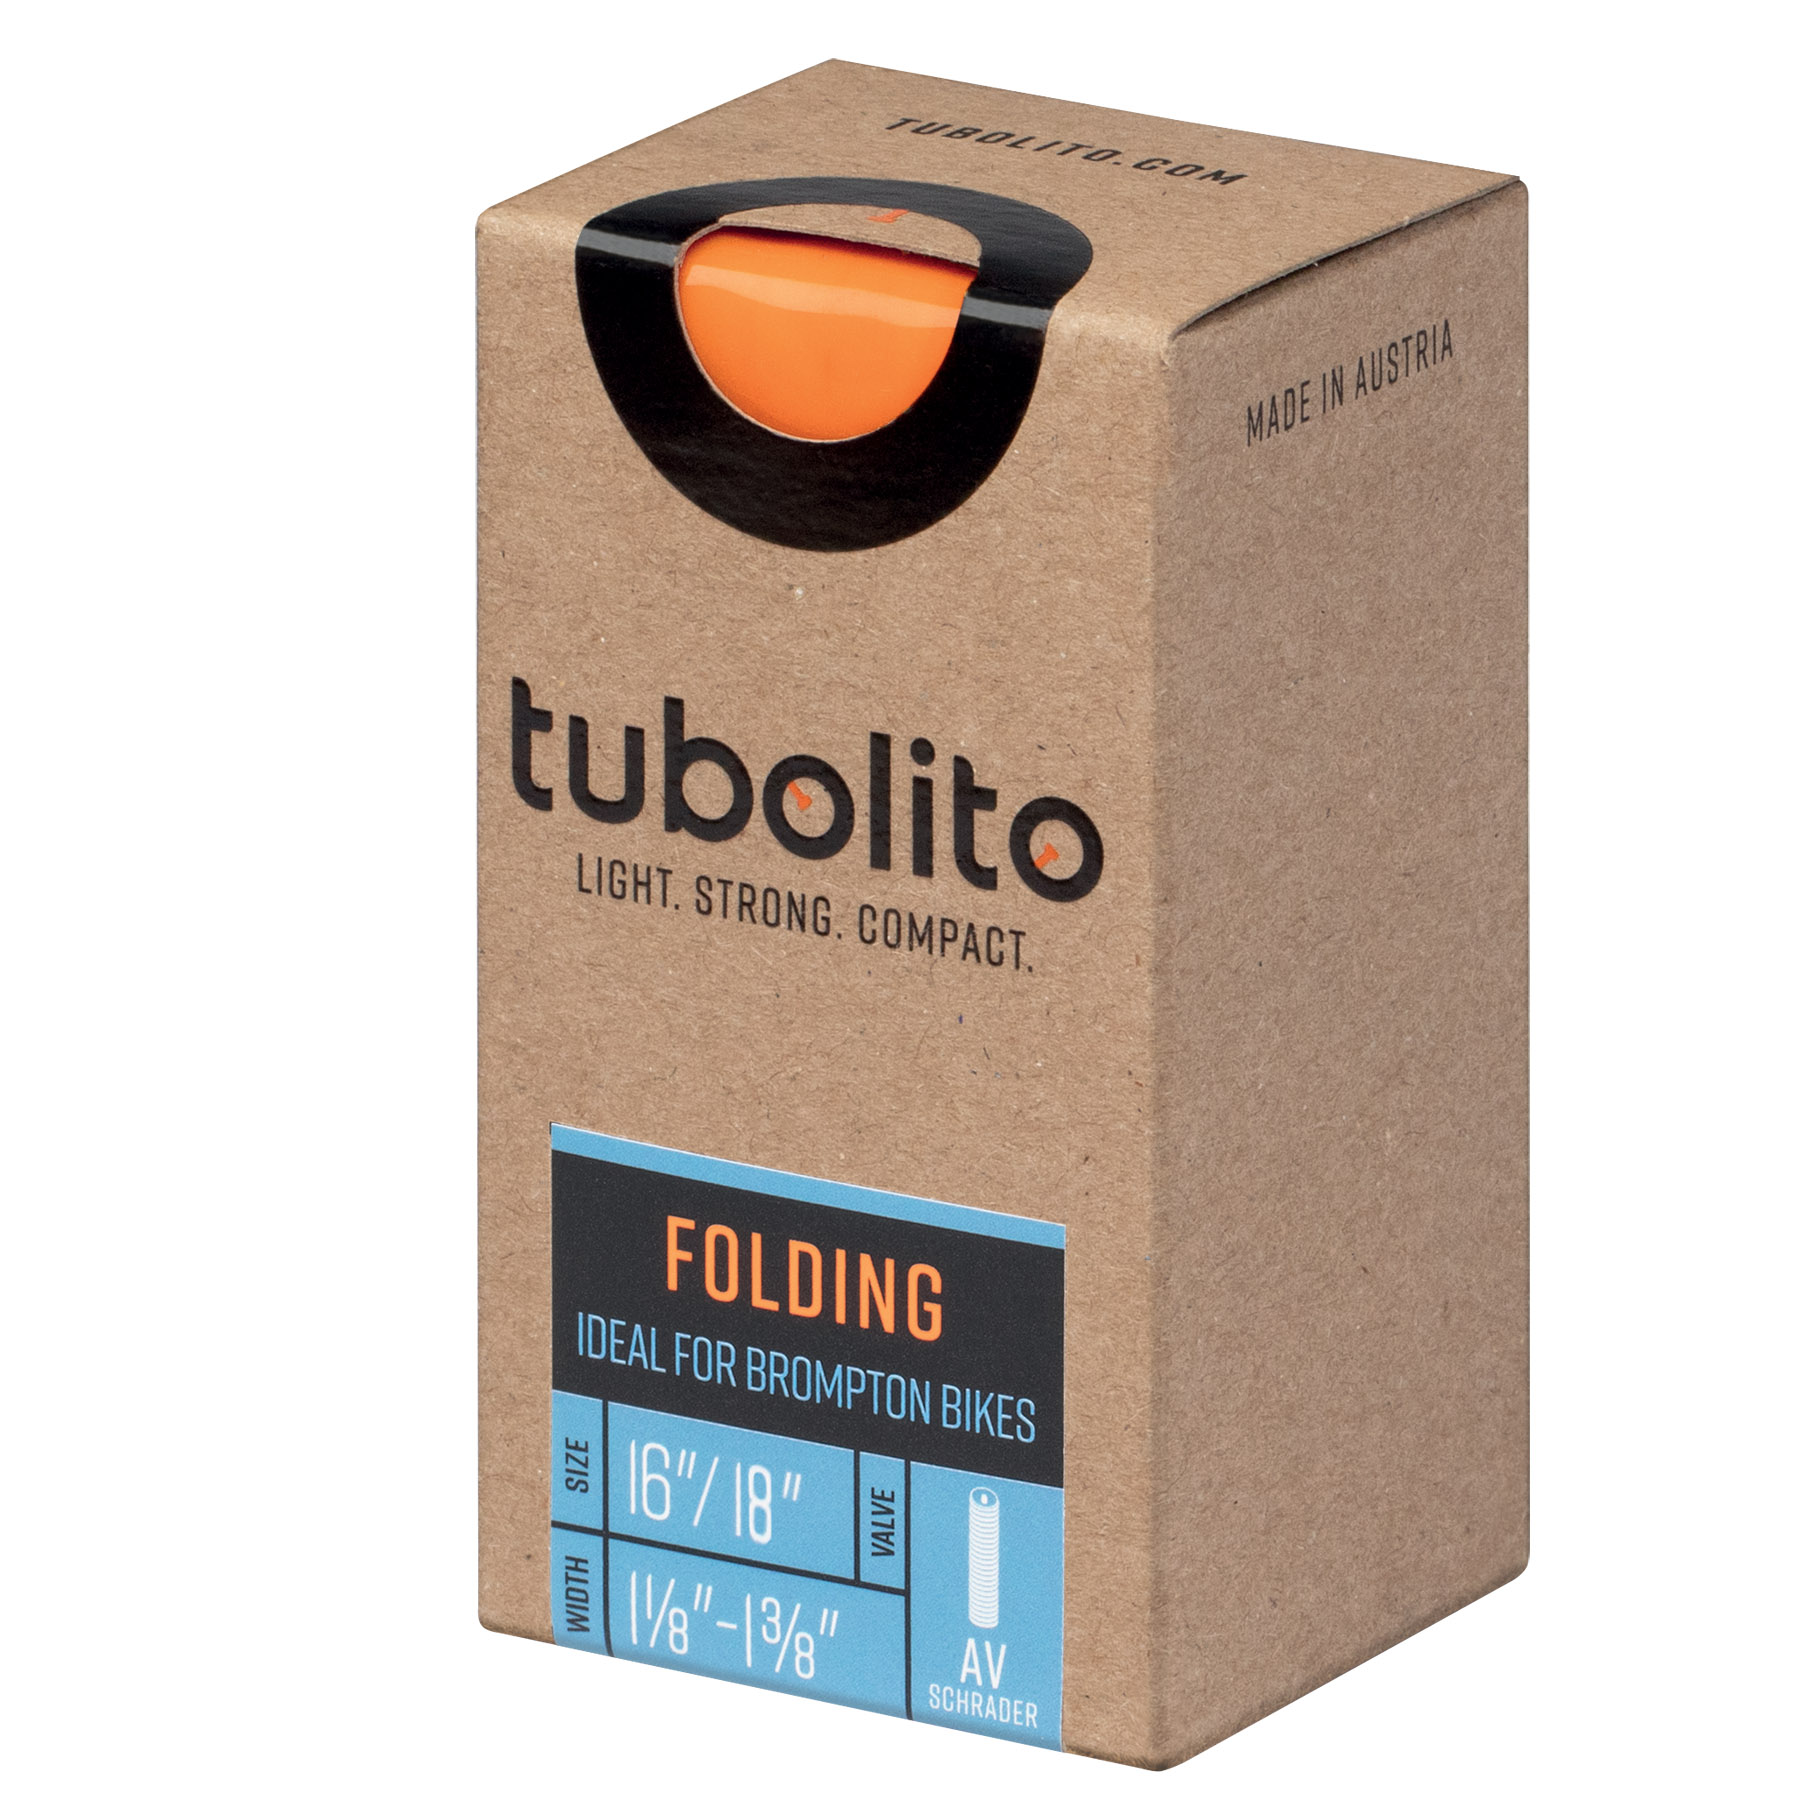 Productfoto van Tubolito Folding Binnenband - 16/18&quot; | 1 1/8&quot;-1 3/8&quot; | AV